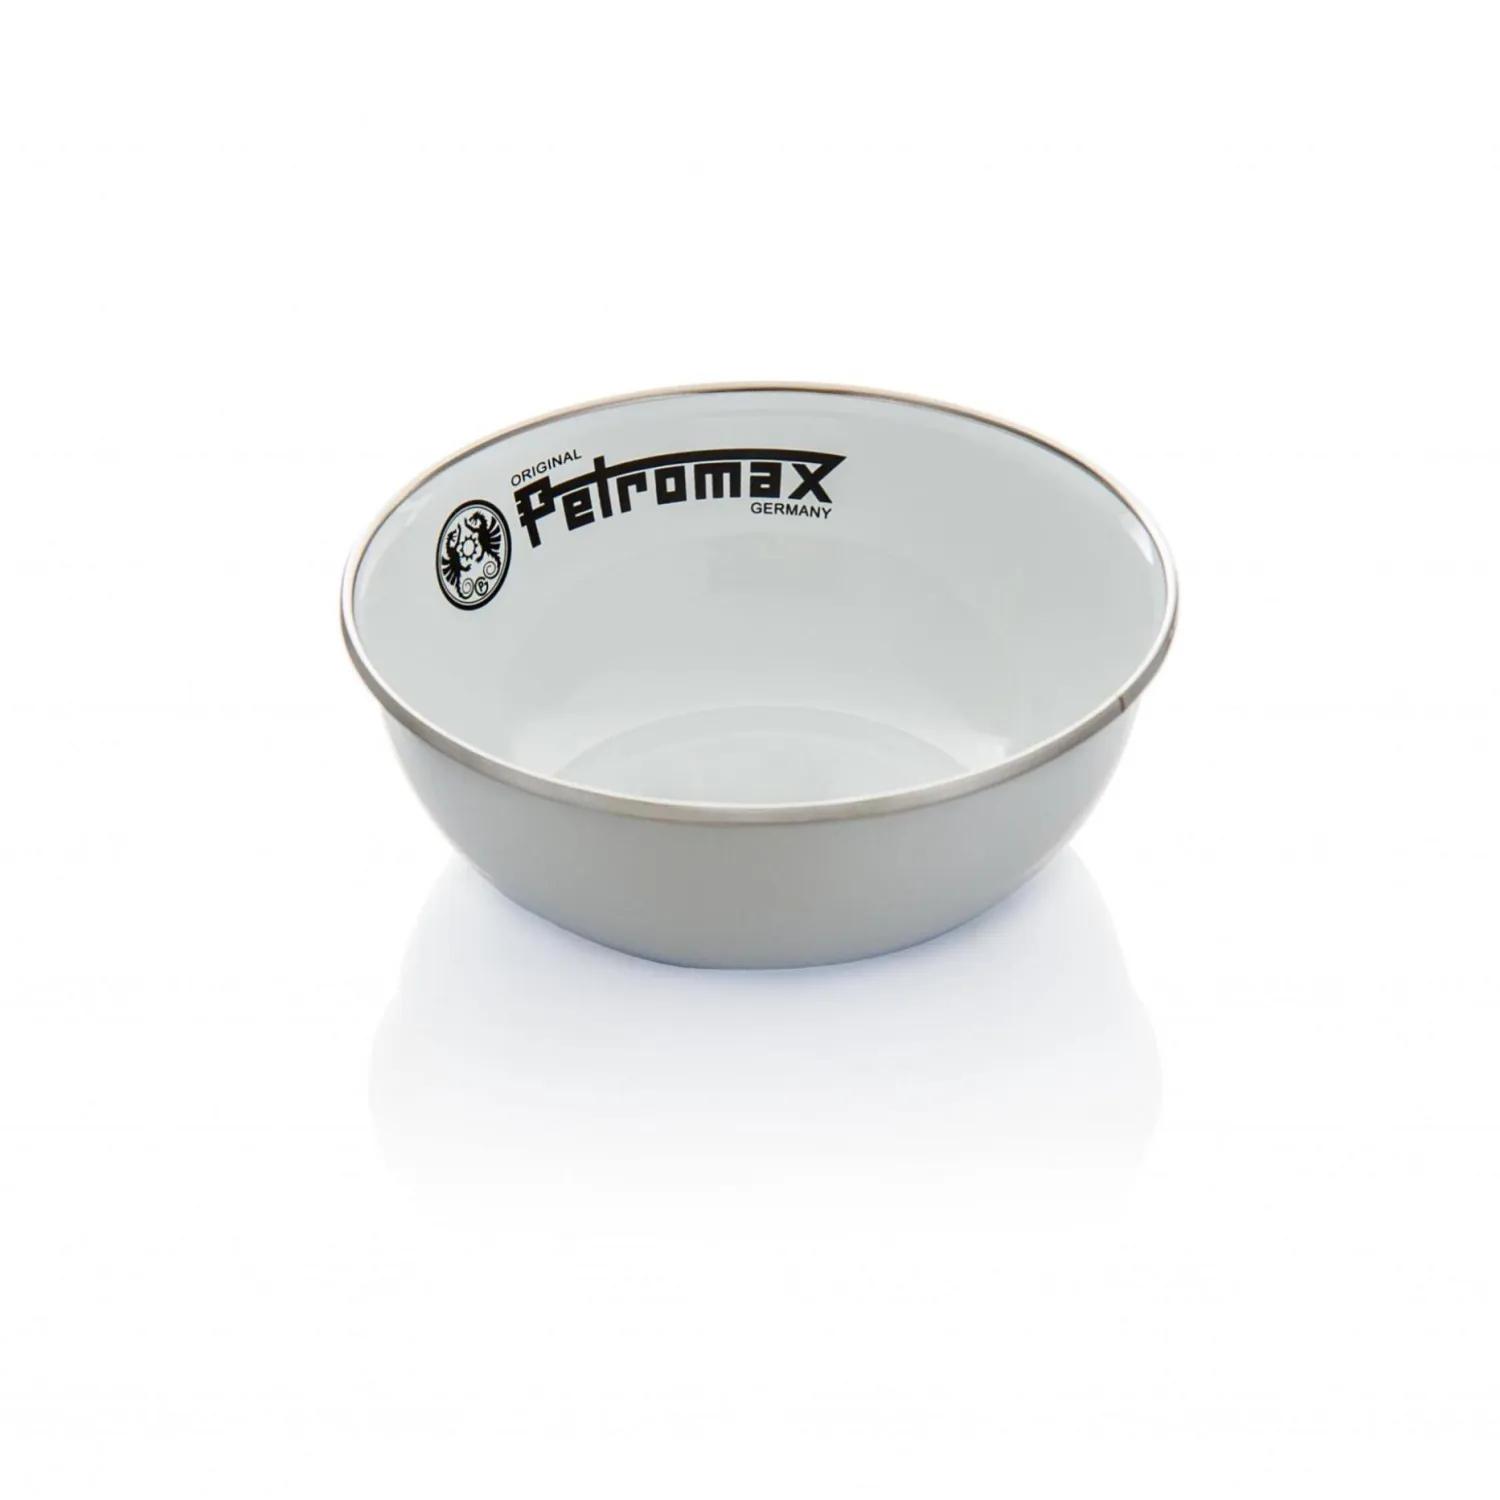 px-bowl-w-Petromax Emaille Schalen weiß.jpg